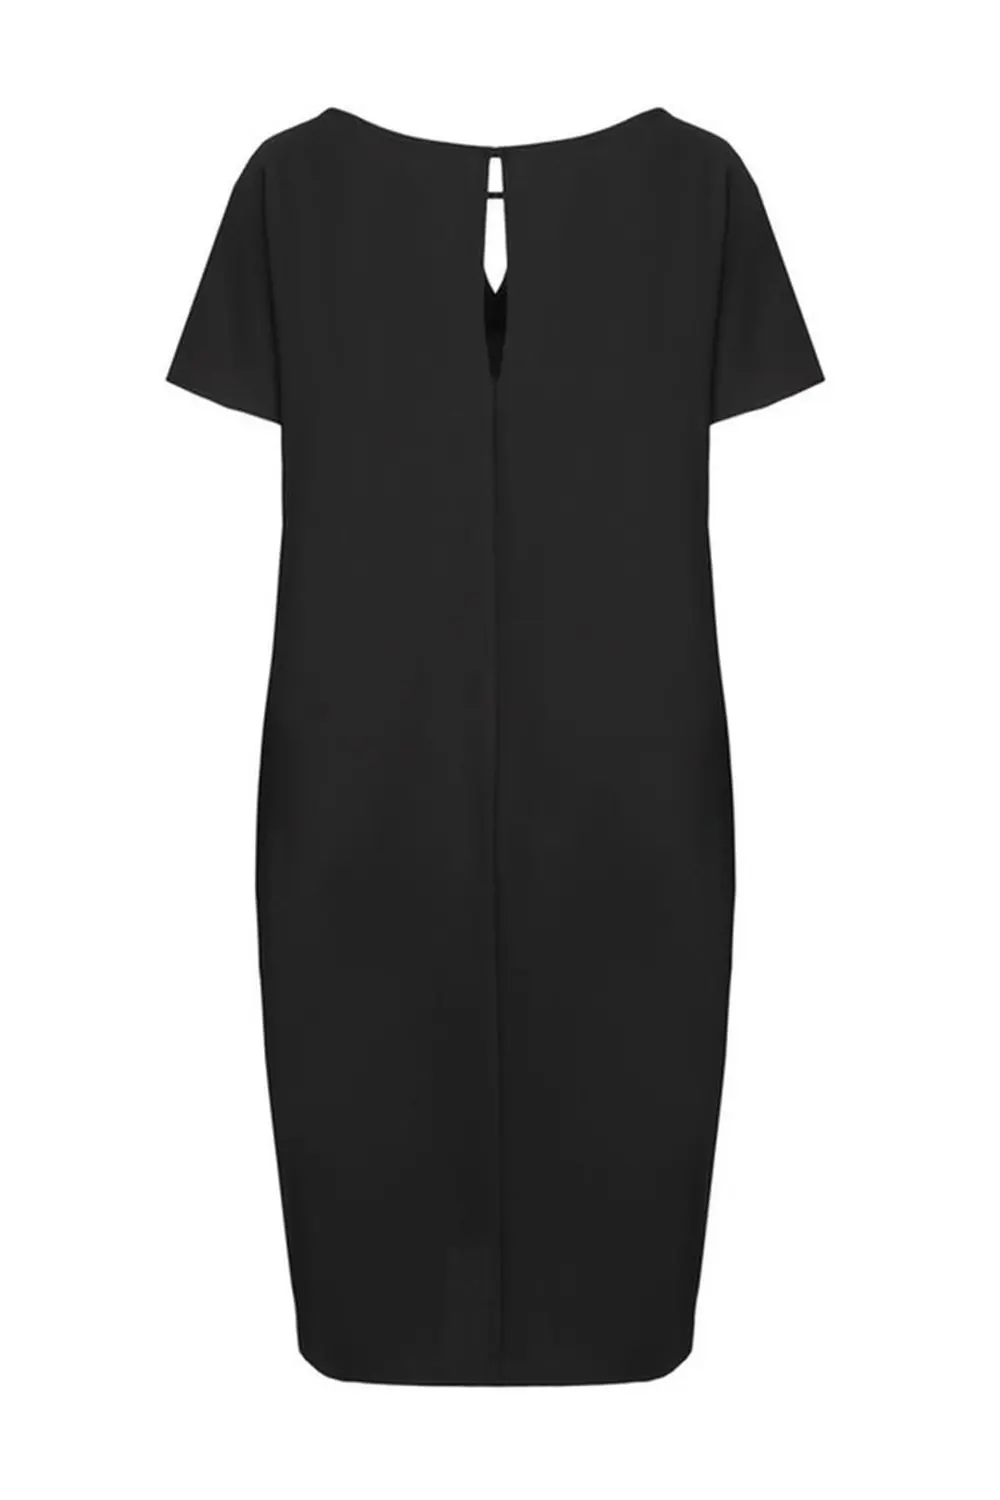 Czarna sukienka oversize krótki rękaw marki Vito Vergelis